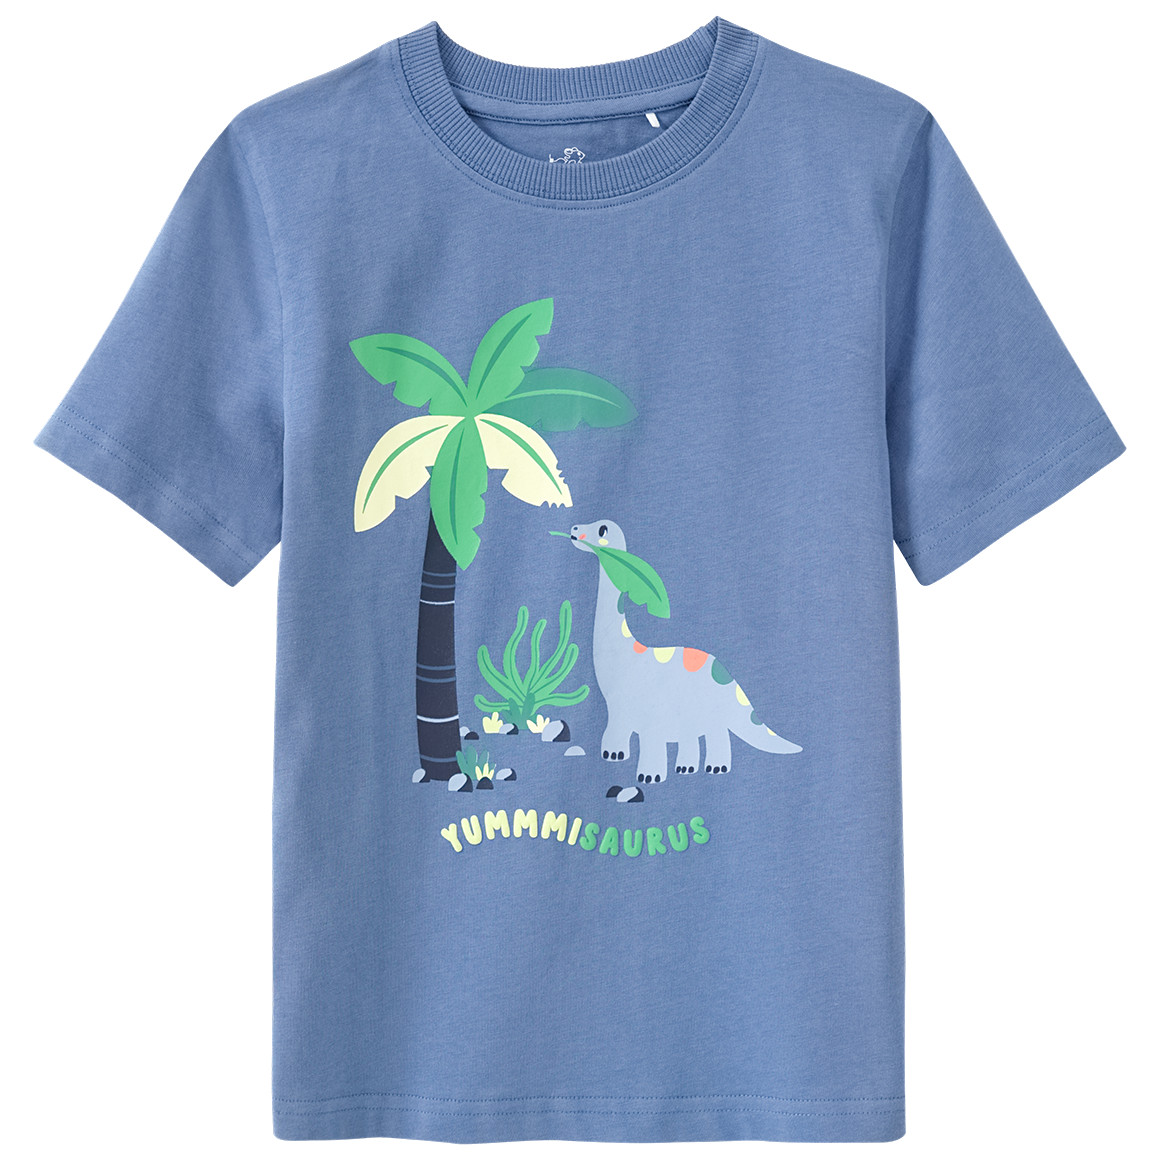 Jungen T-Shirt mit Dino-Print von Topolino